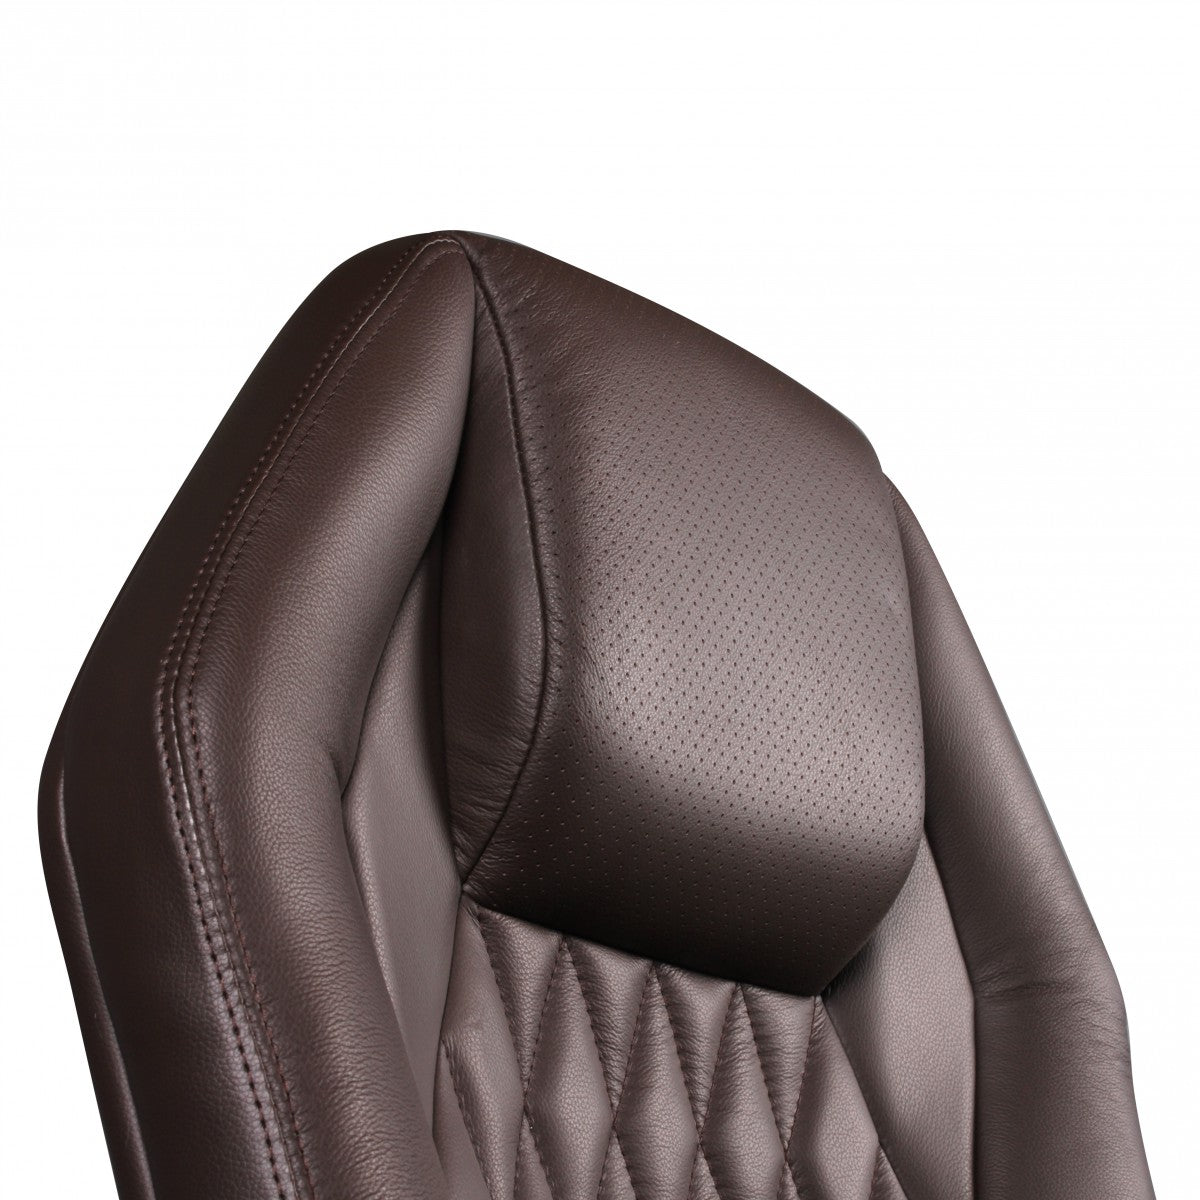 Chaise de bureau en cuir de luxe Nancy's Manhattanville - Fauteuil de direction - Cuir véritable - Ergonomique - Chaise de jeu - Chaises de bureau - Marron clair/Marron foncé/Noir